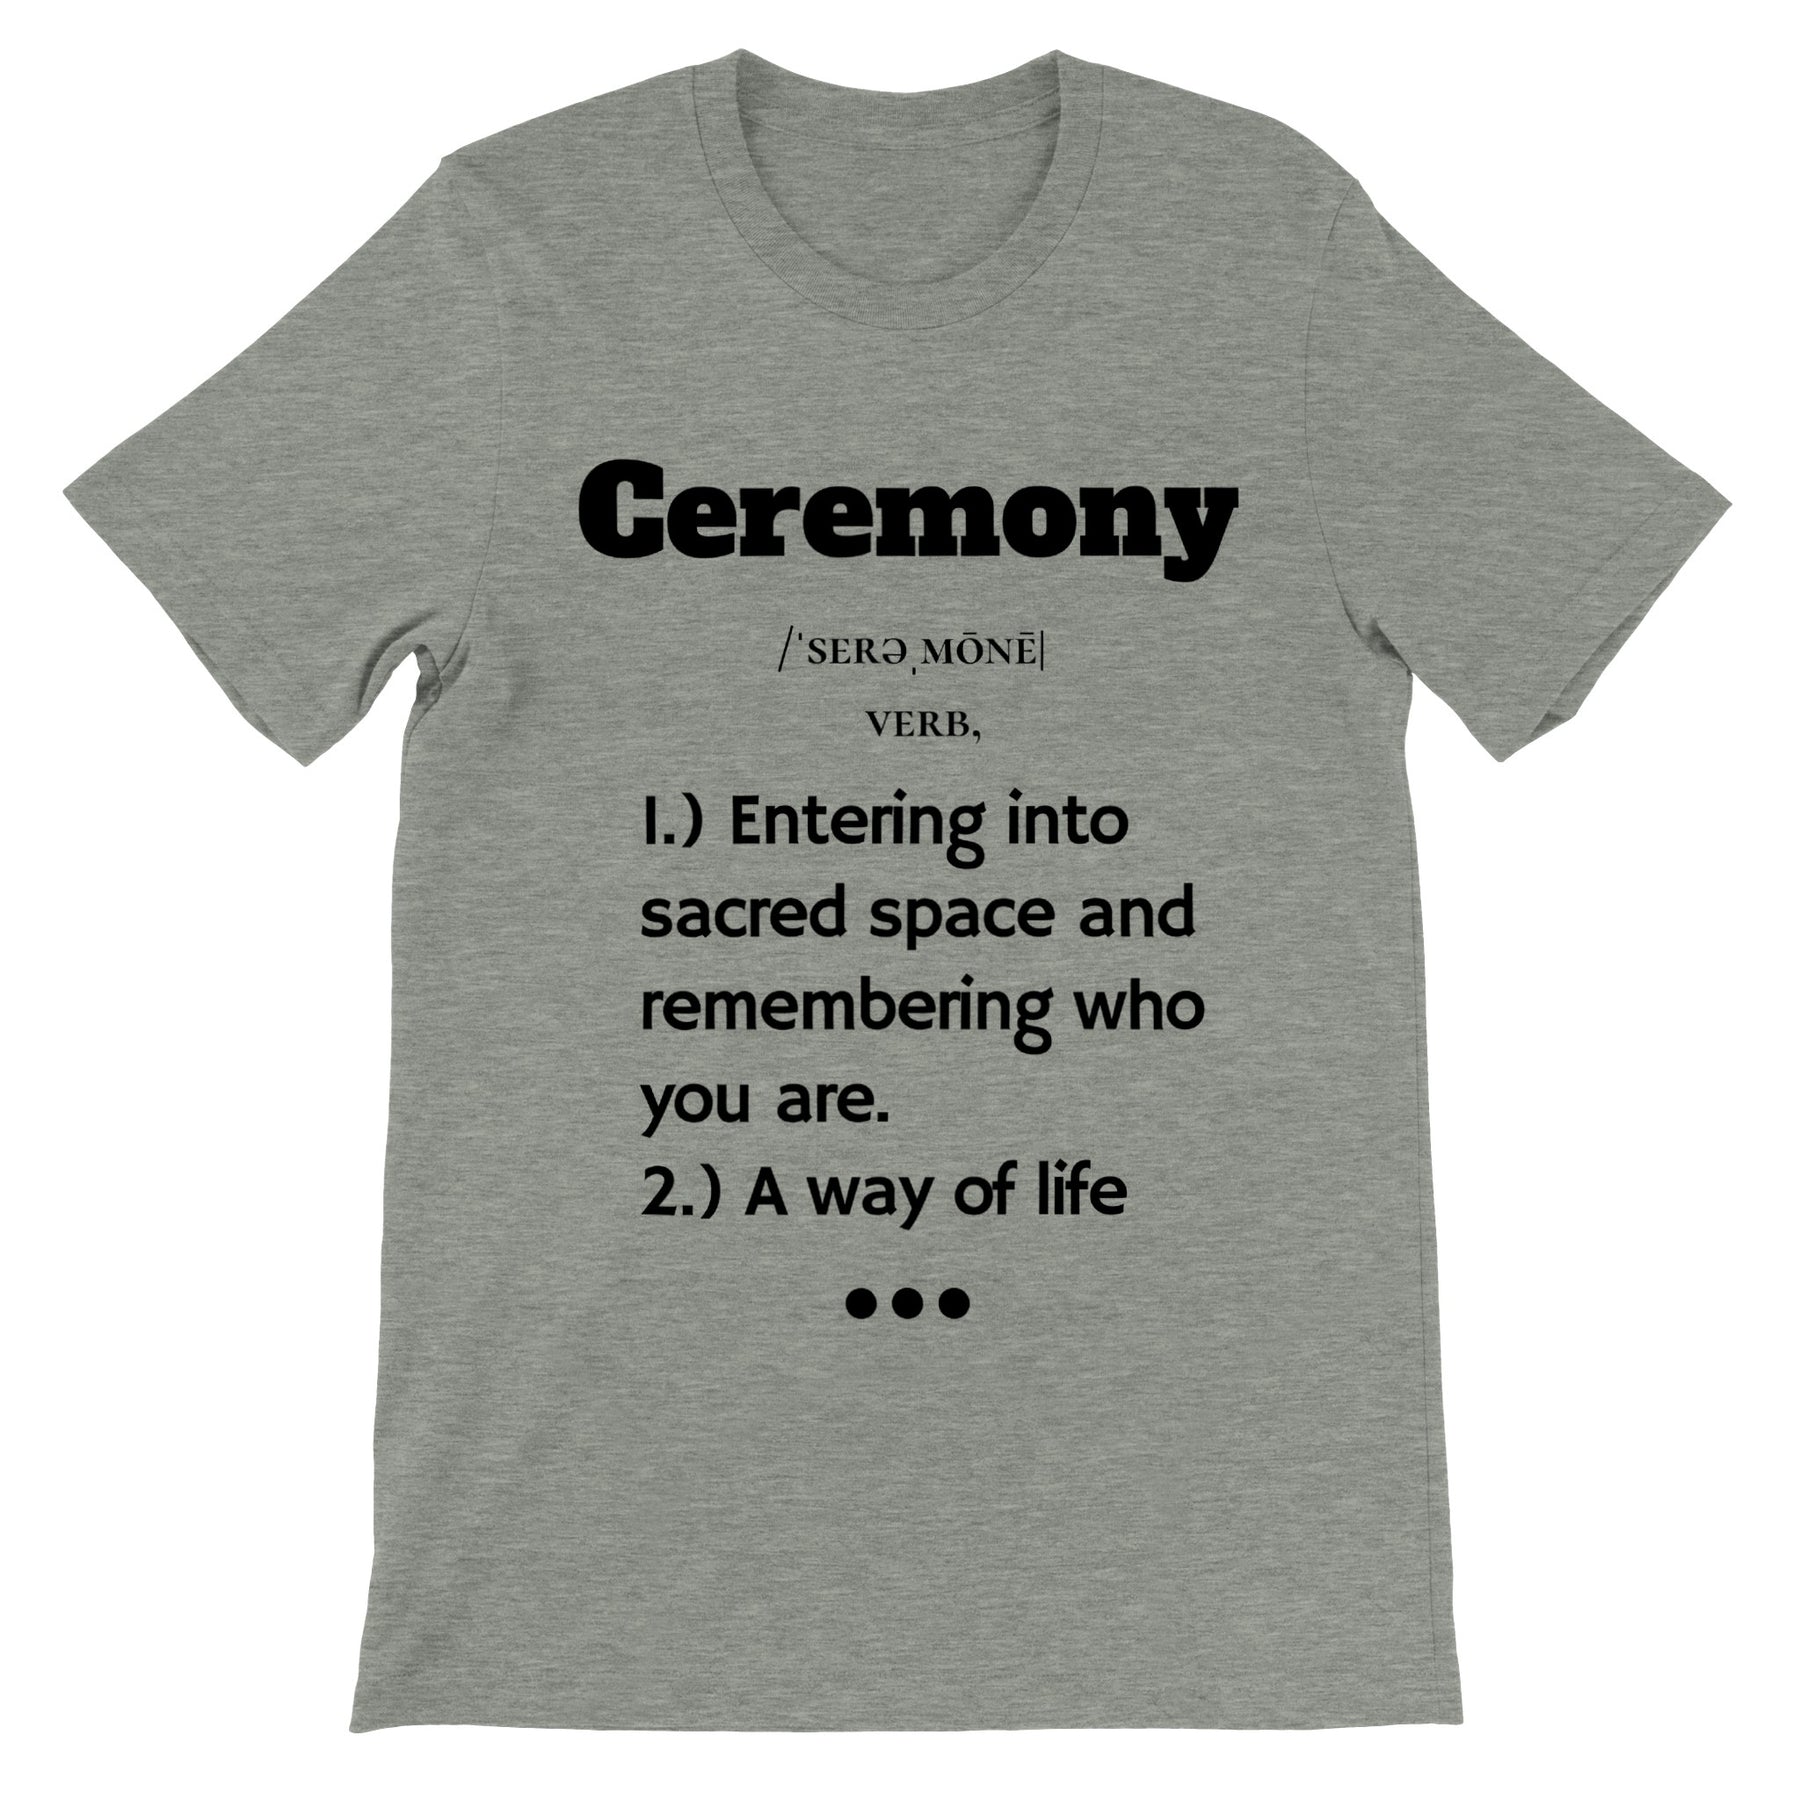 How do you define ceremony?